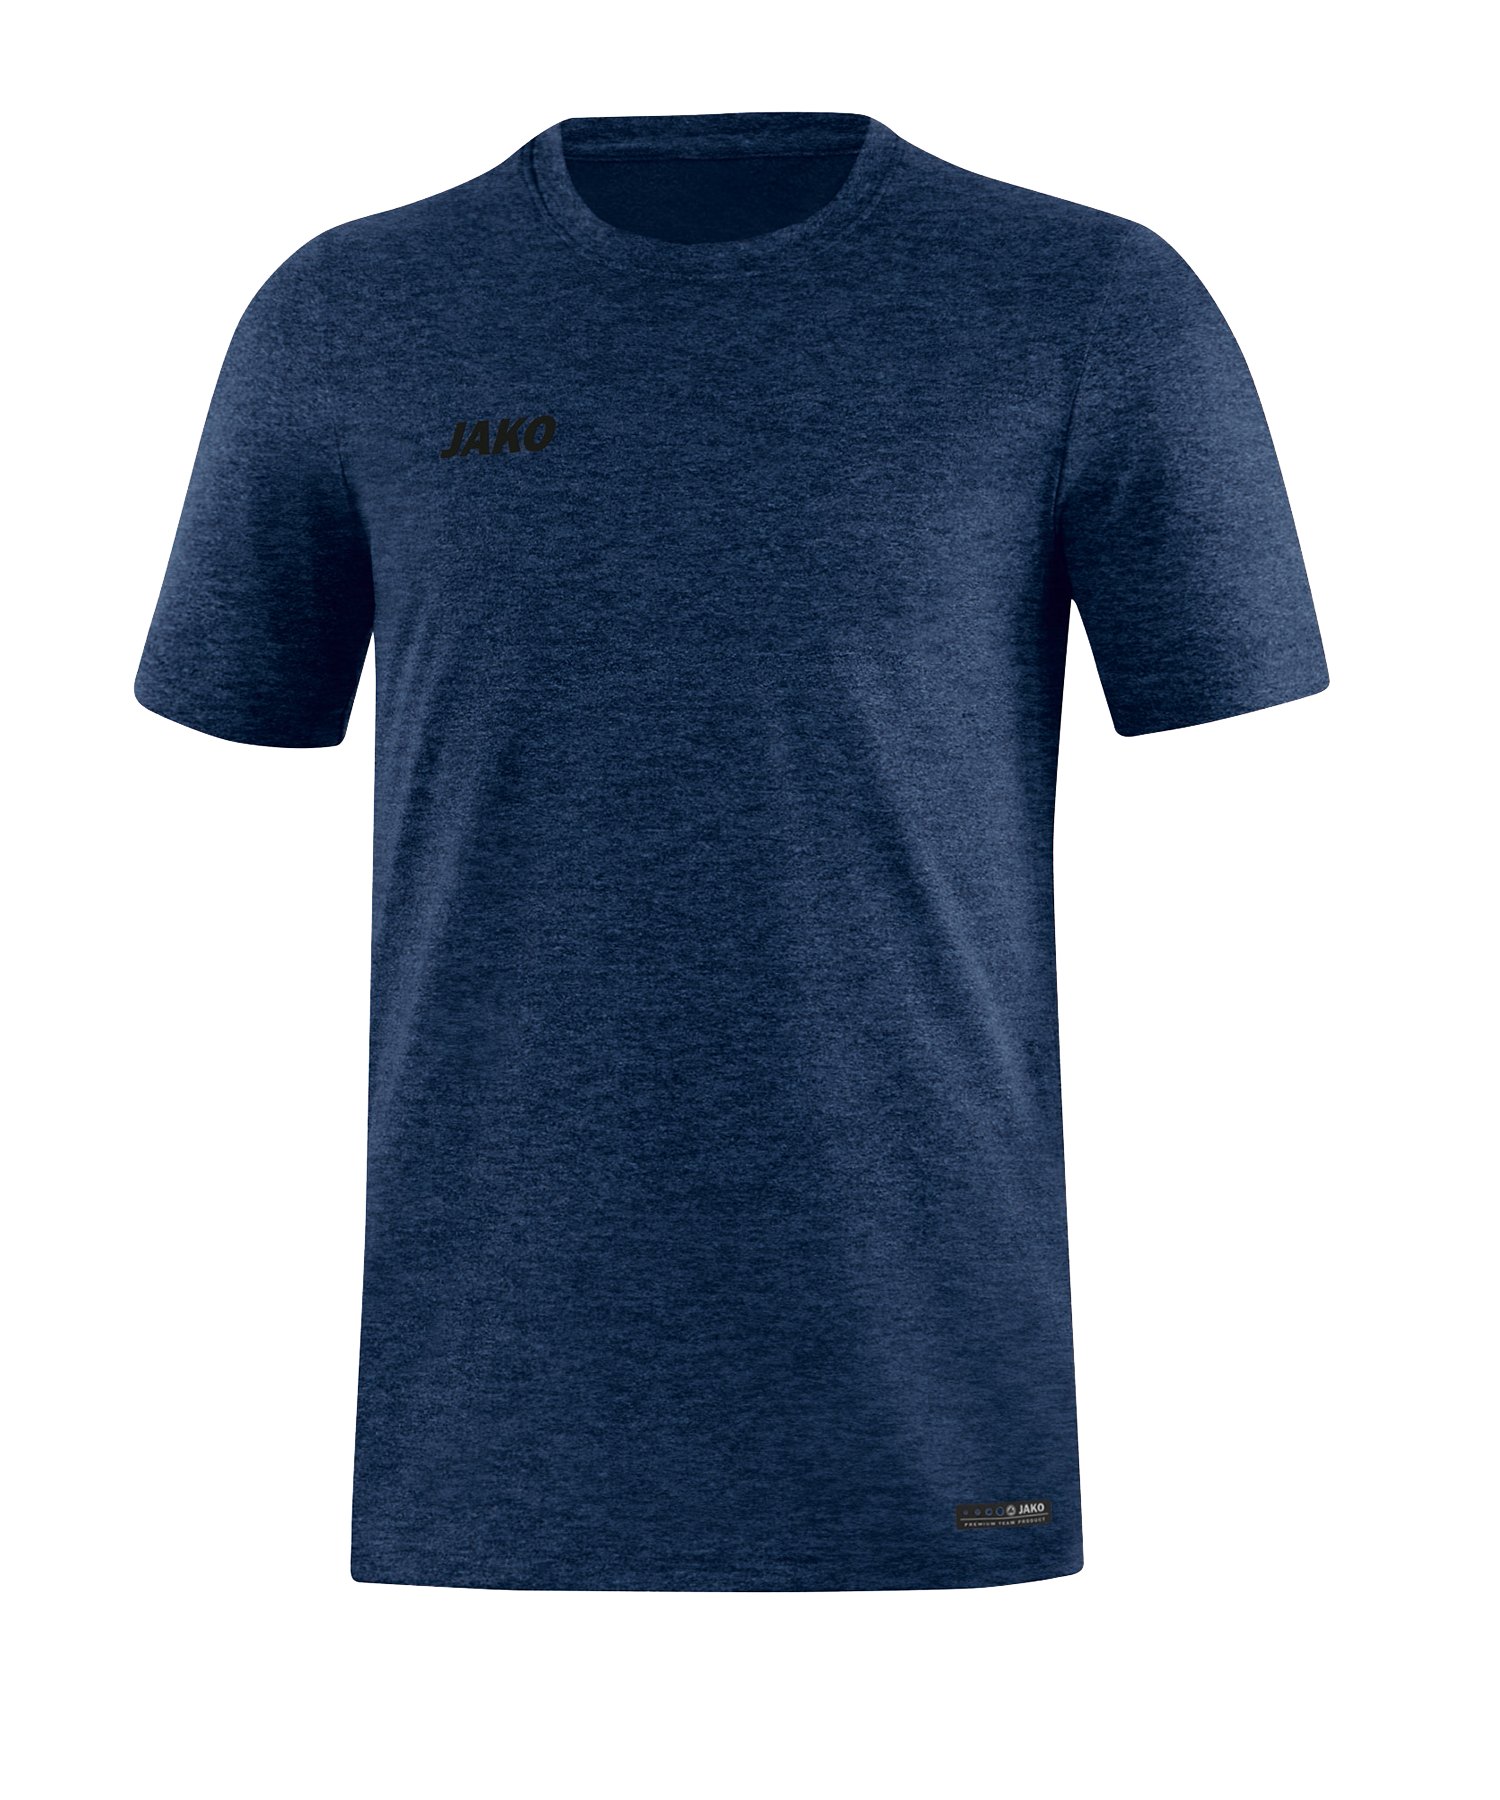 Jako T-Shirt Premium Basic Blau F49 - blau